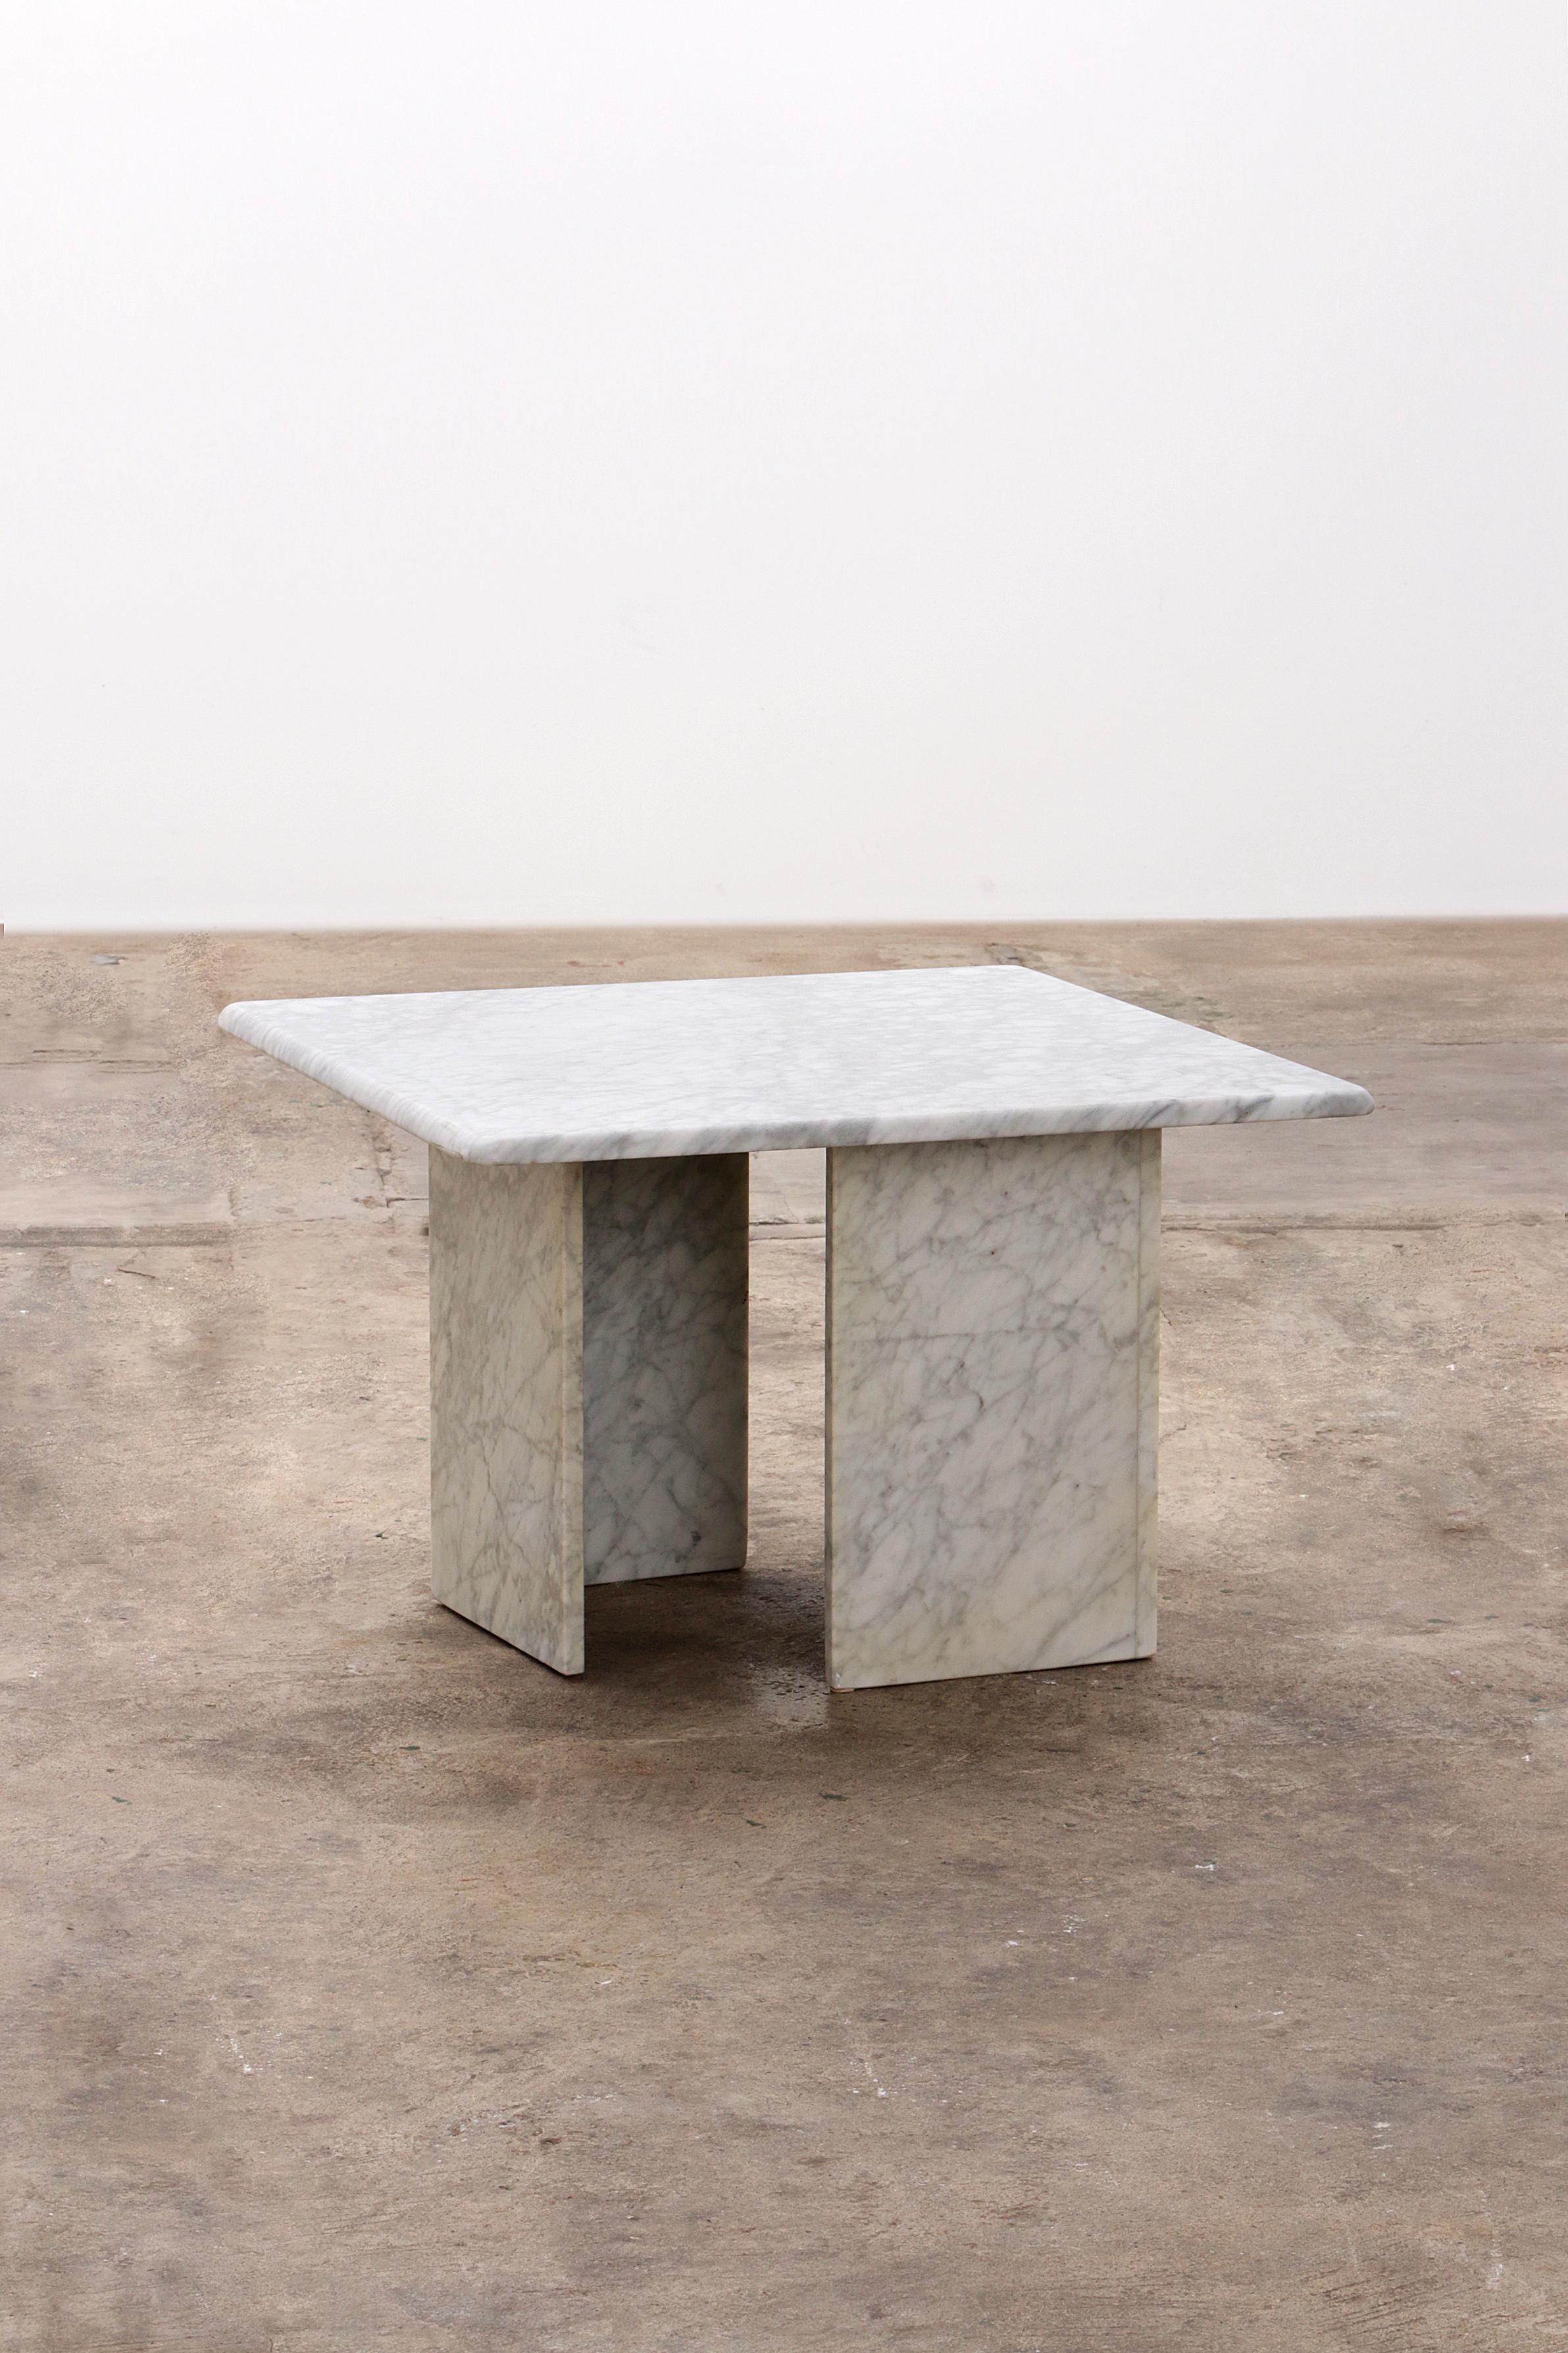 Table basse en marbre italien, design intemporel des années 1970

Découvrez le charme du design italien avec notre table basse intemporelle en marbre blanc, un ajout élégant à tout intérieur. Cette table basse, datant des années 1970, allie sans